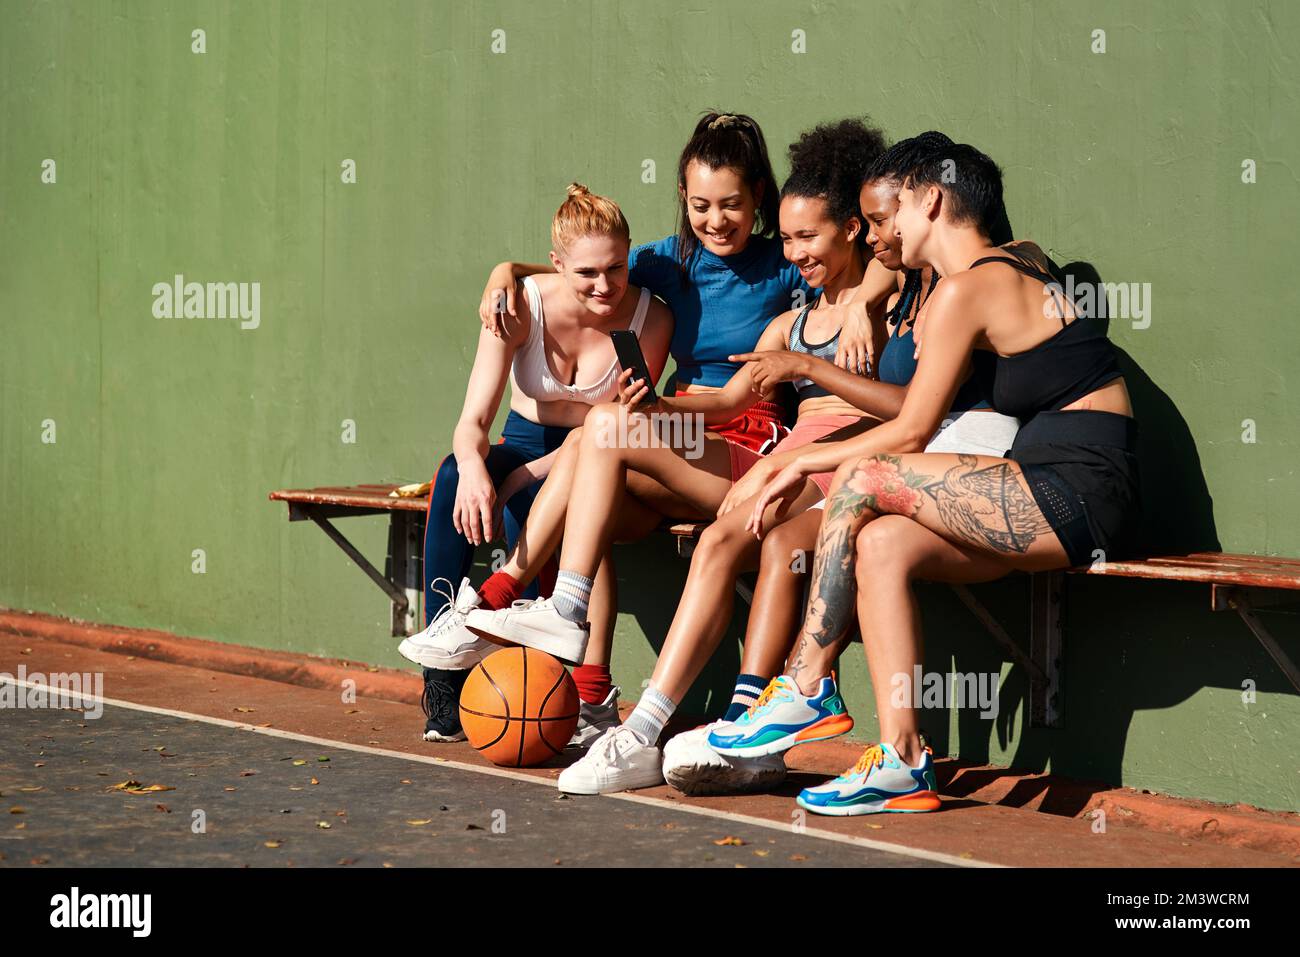 Souriez. un groupe diversifié de sportifs assis ensemble après avoir joué au basket-ball et regardé un téléphone portable. Banque D'Images